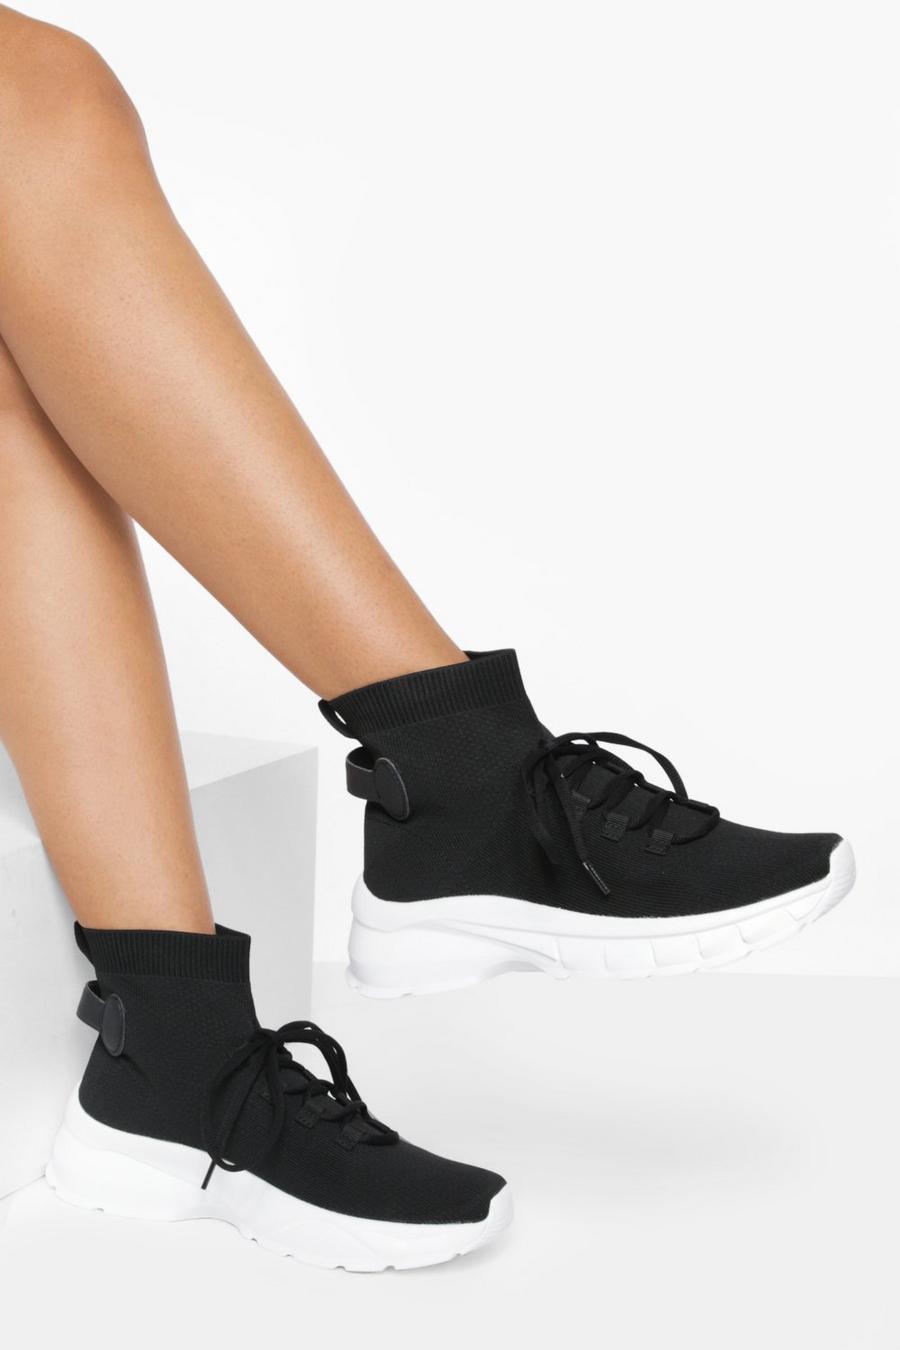 Zapatillas deportivas calcetín con cordones cruzados, Black negro